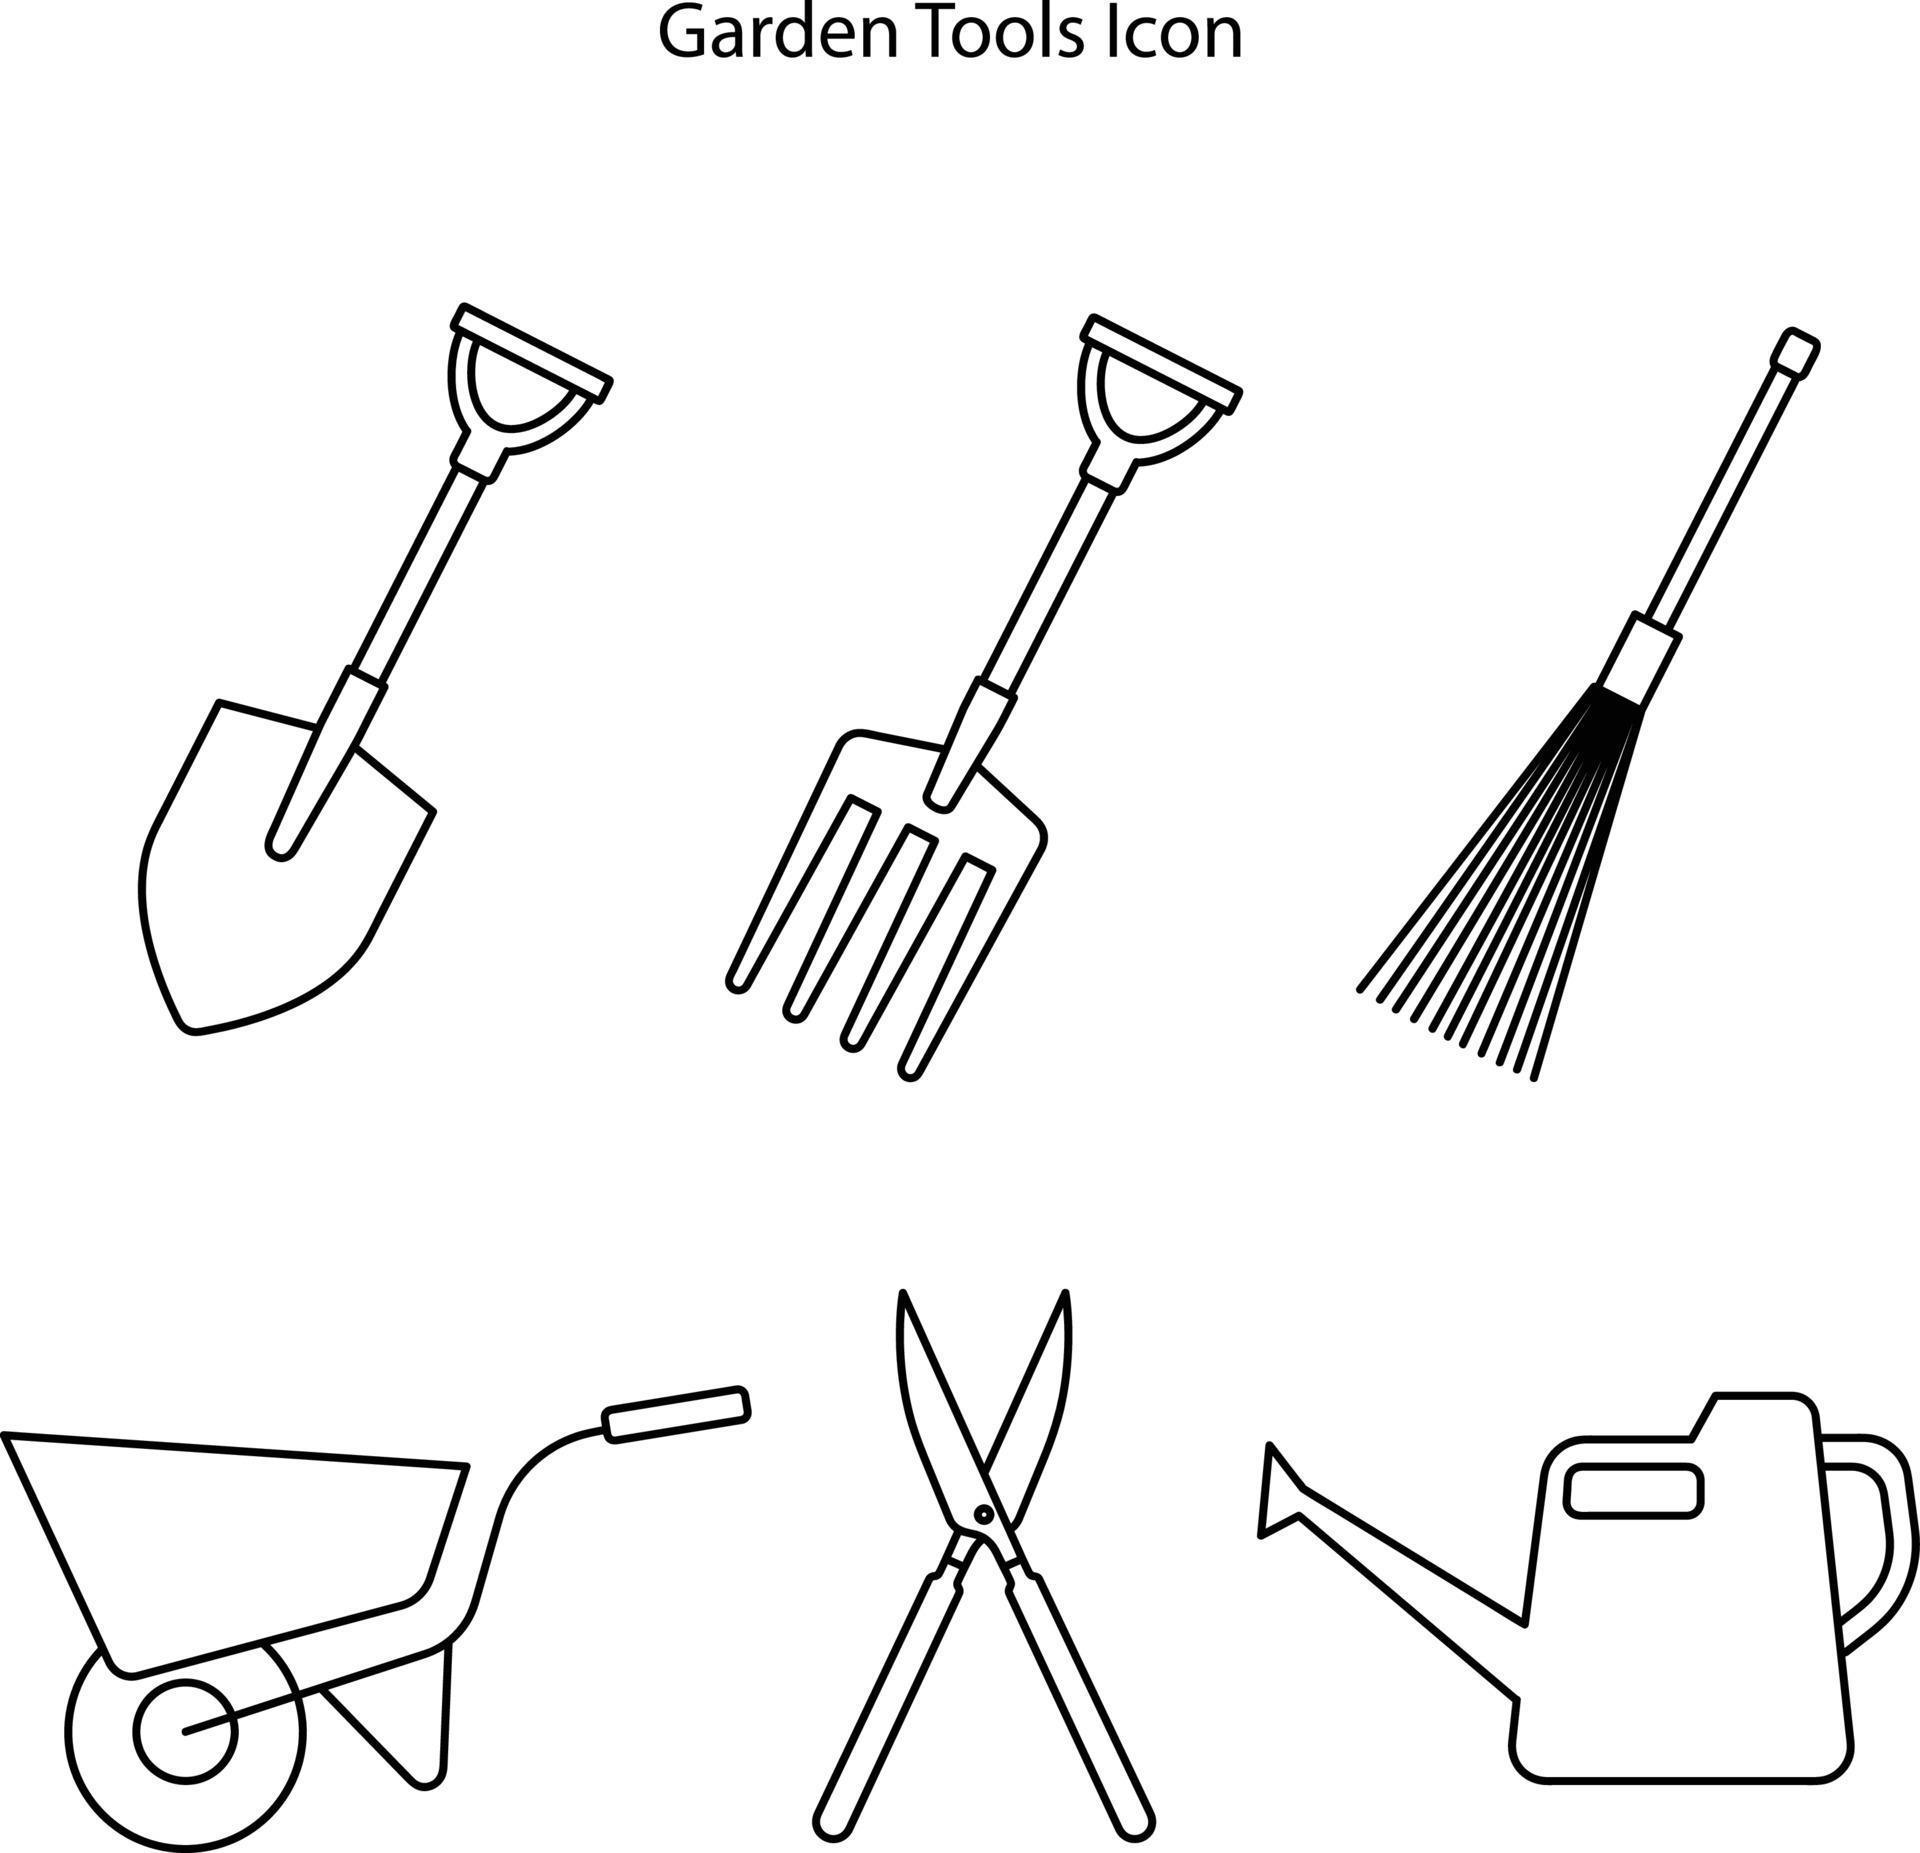 garden tool icon set isolated on white background. garden tool icon ...